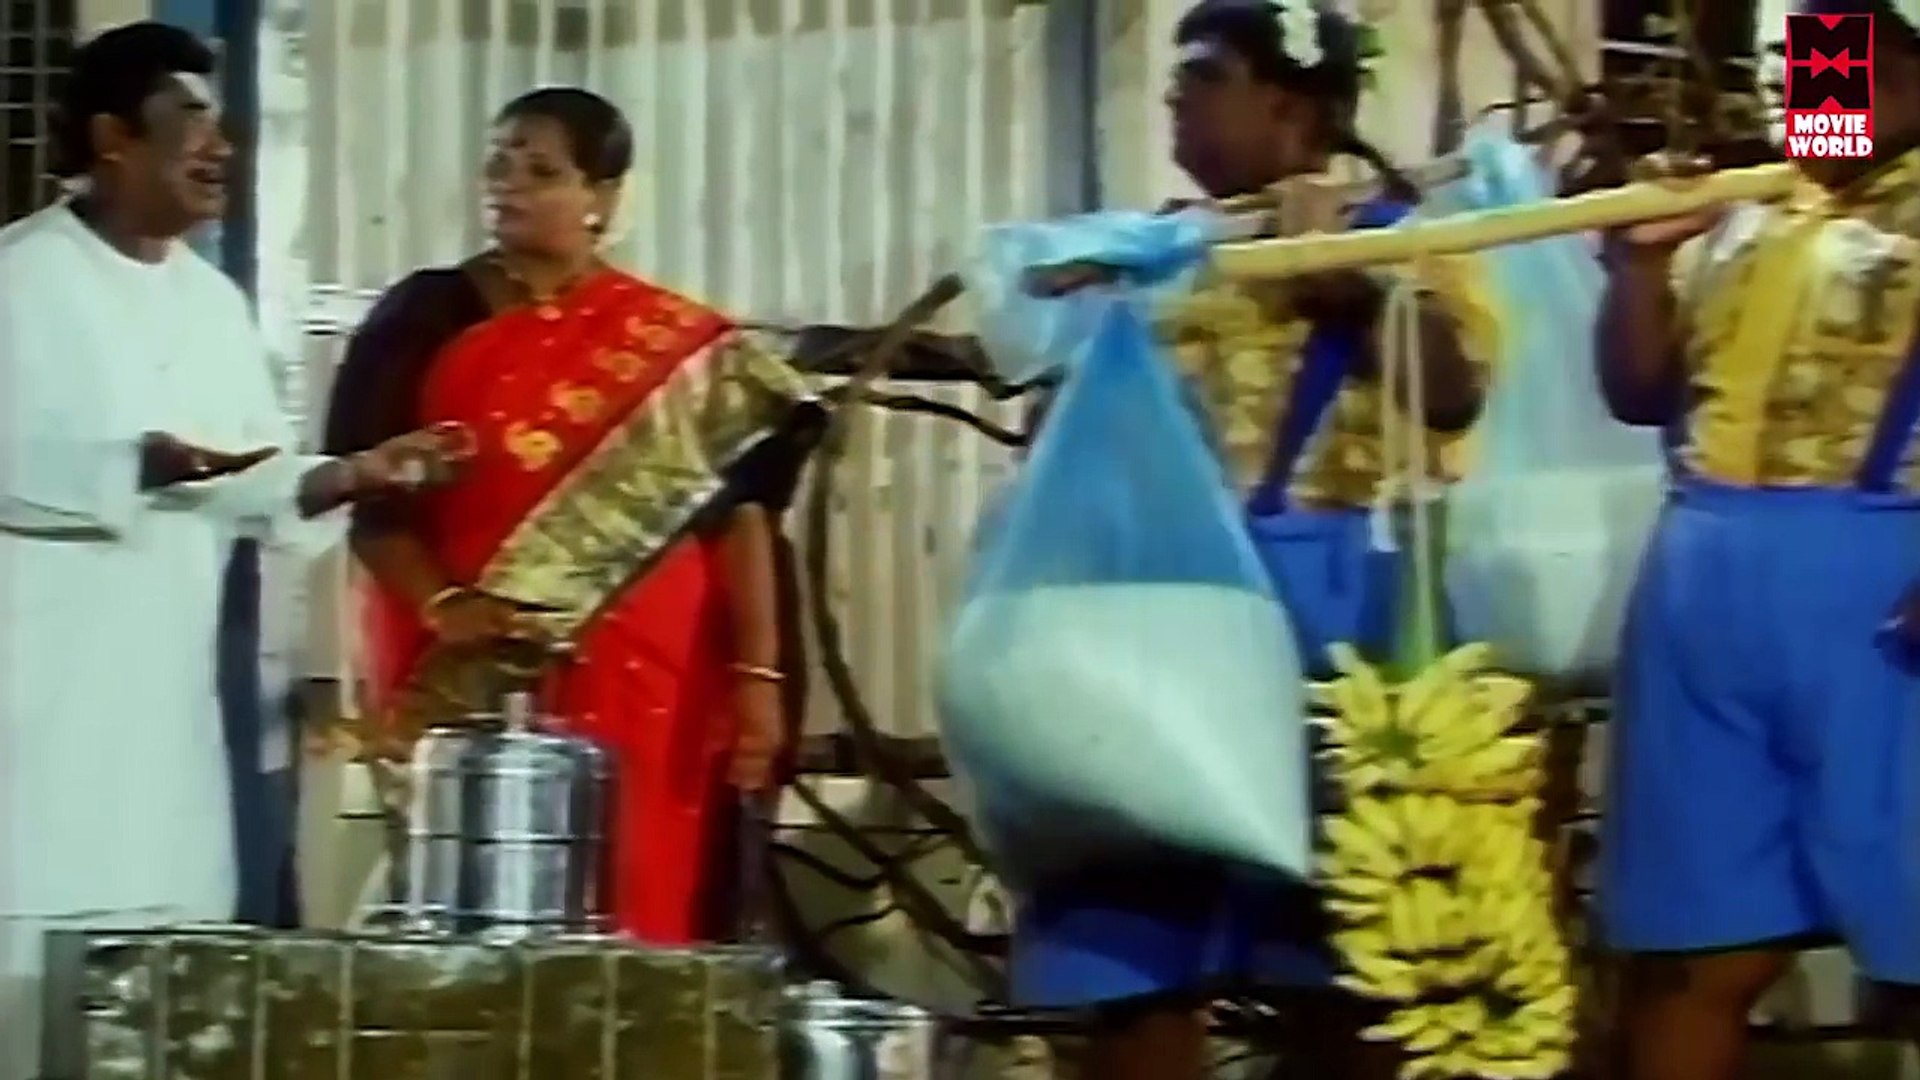 துன்பம் மறந்து வயிறு குலுங்க சிரிக்க வைக்கும் காமெடி#Senthil & Goundamani Comedy Scenes#Tamil Co